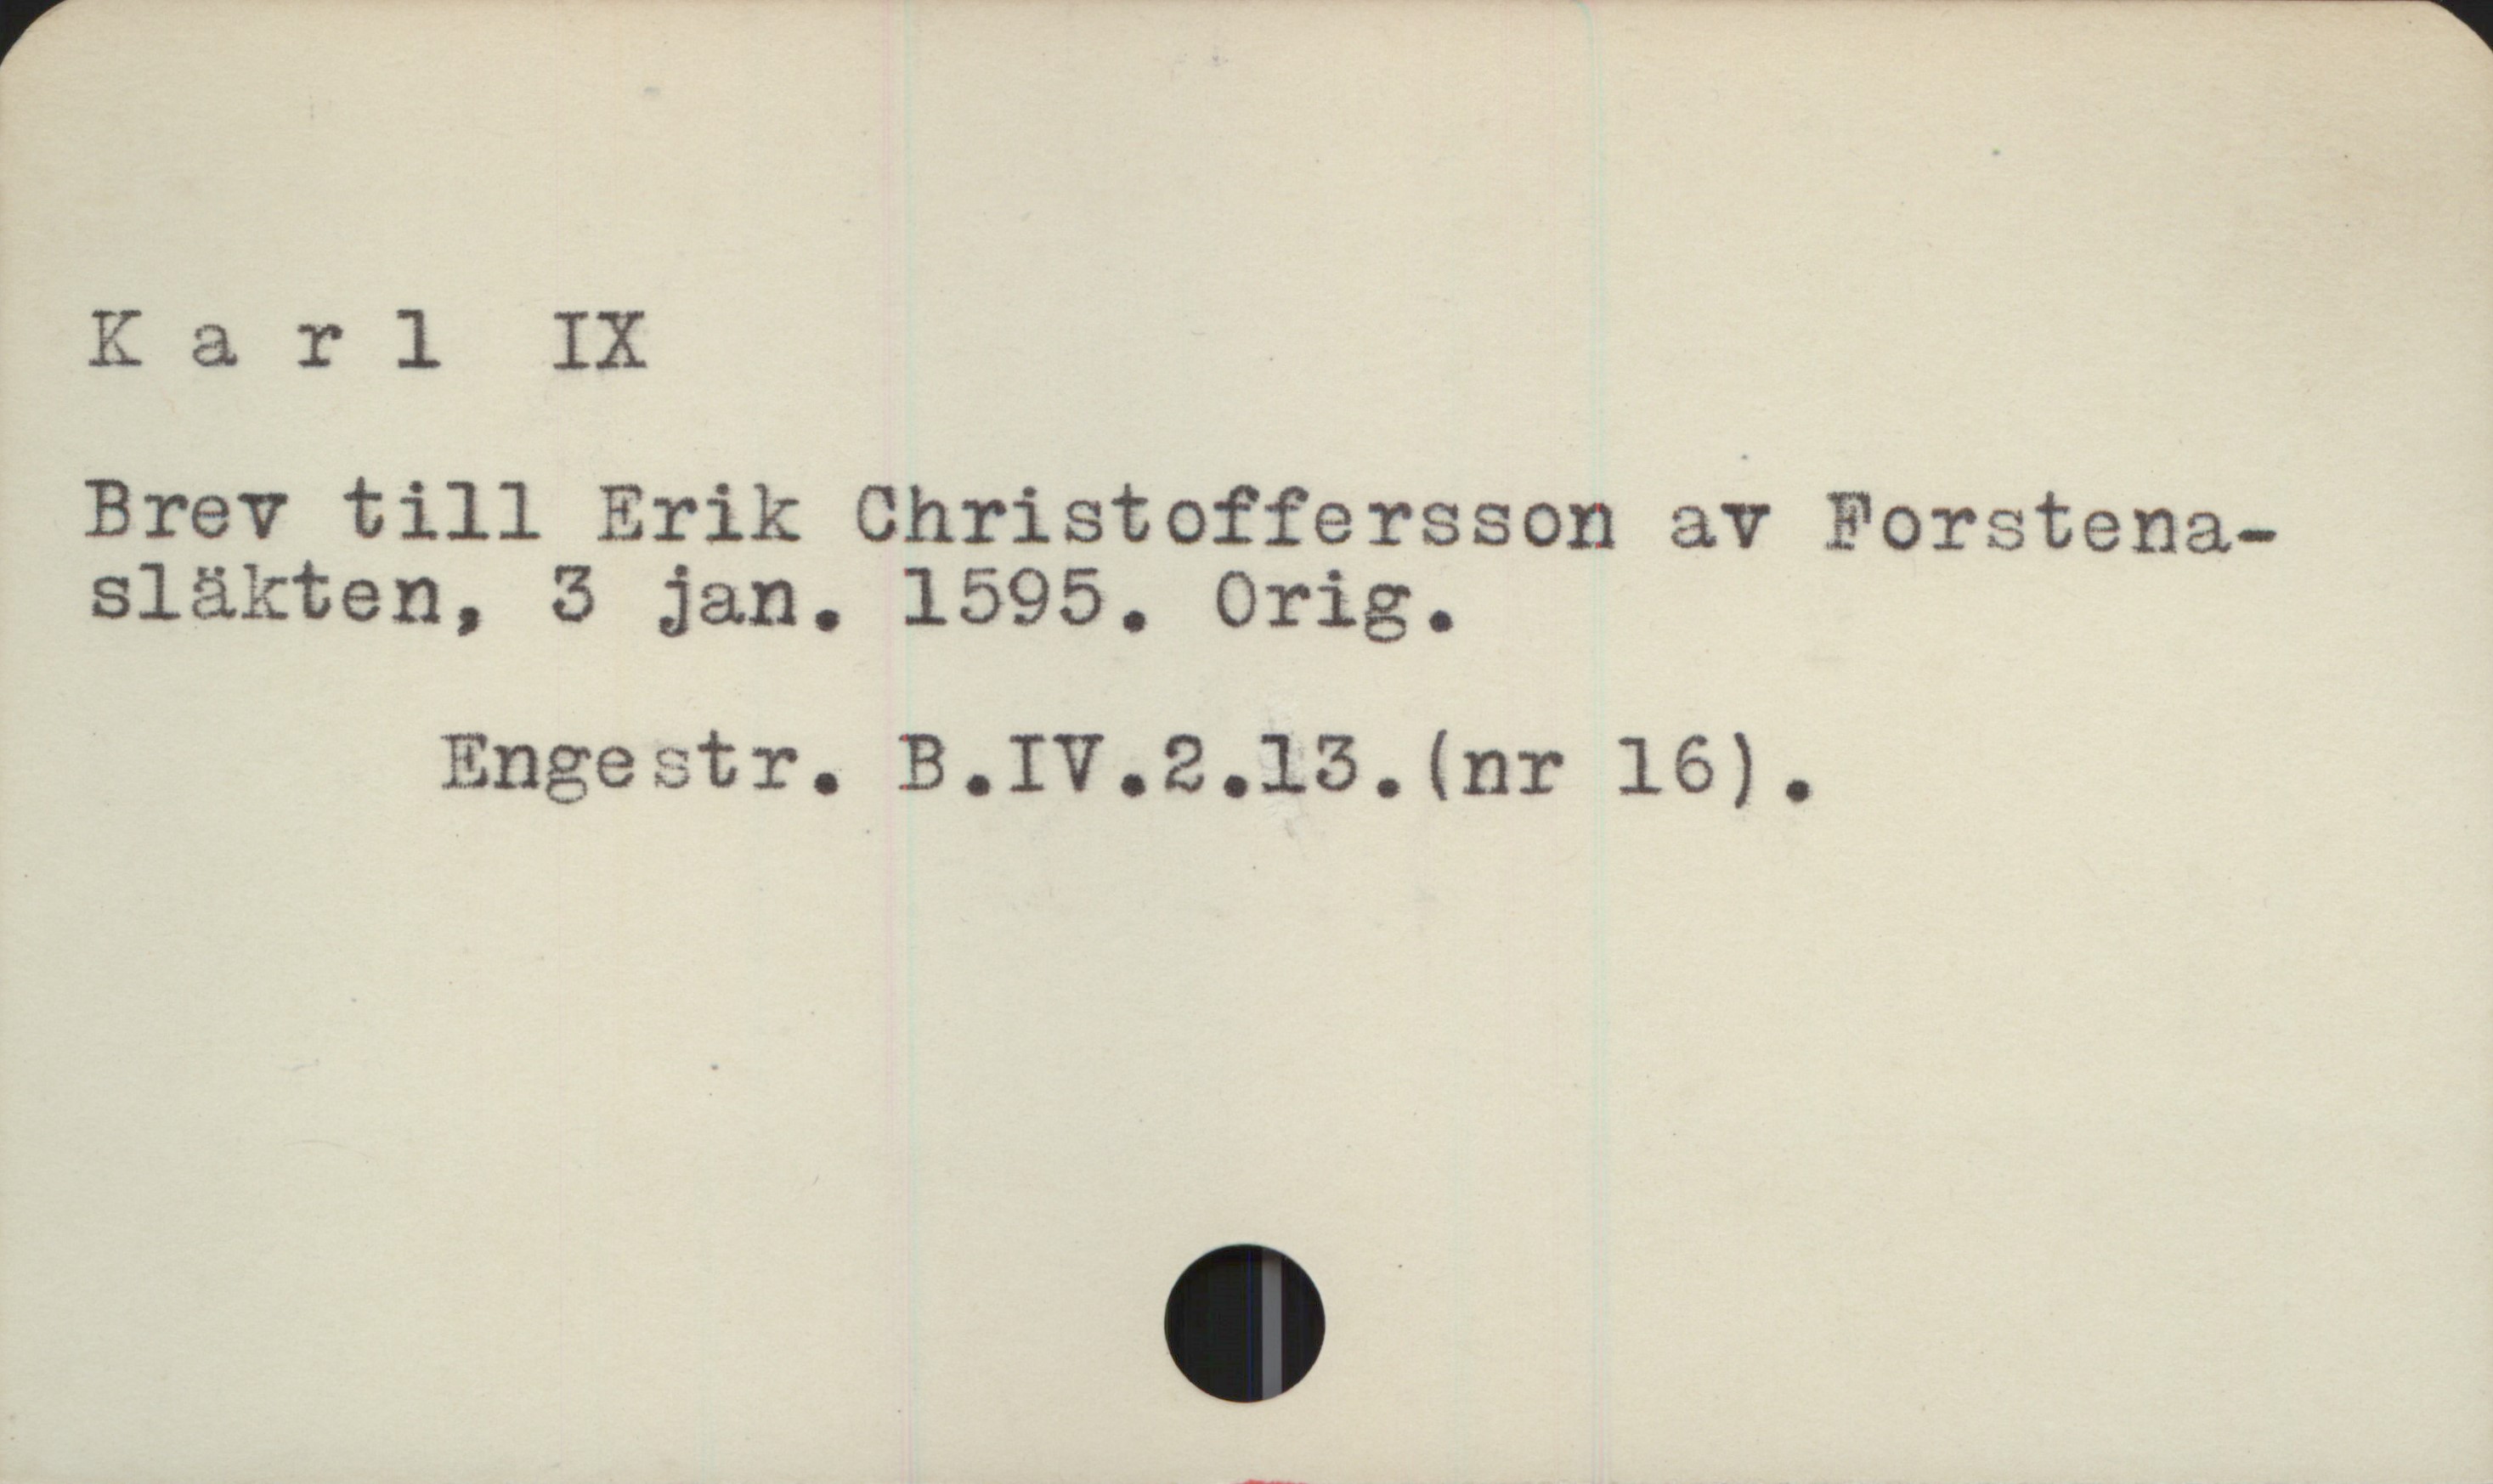  Ka r l IX
Brev till Erik Christoffersson av Forstena-
släkten, 3 jan. 1595. Orig.

Engestr. B.IV.2.13. (nr 16).

